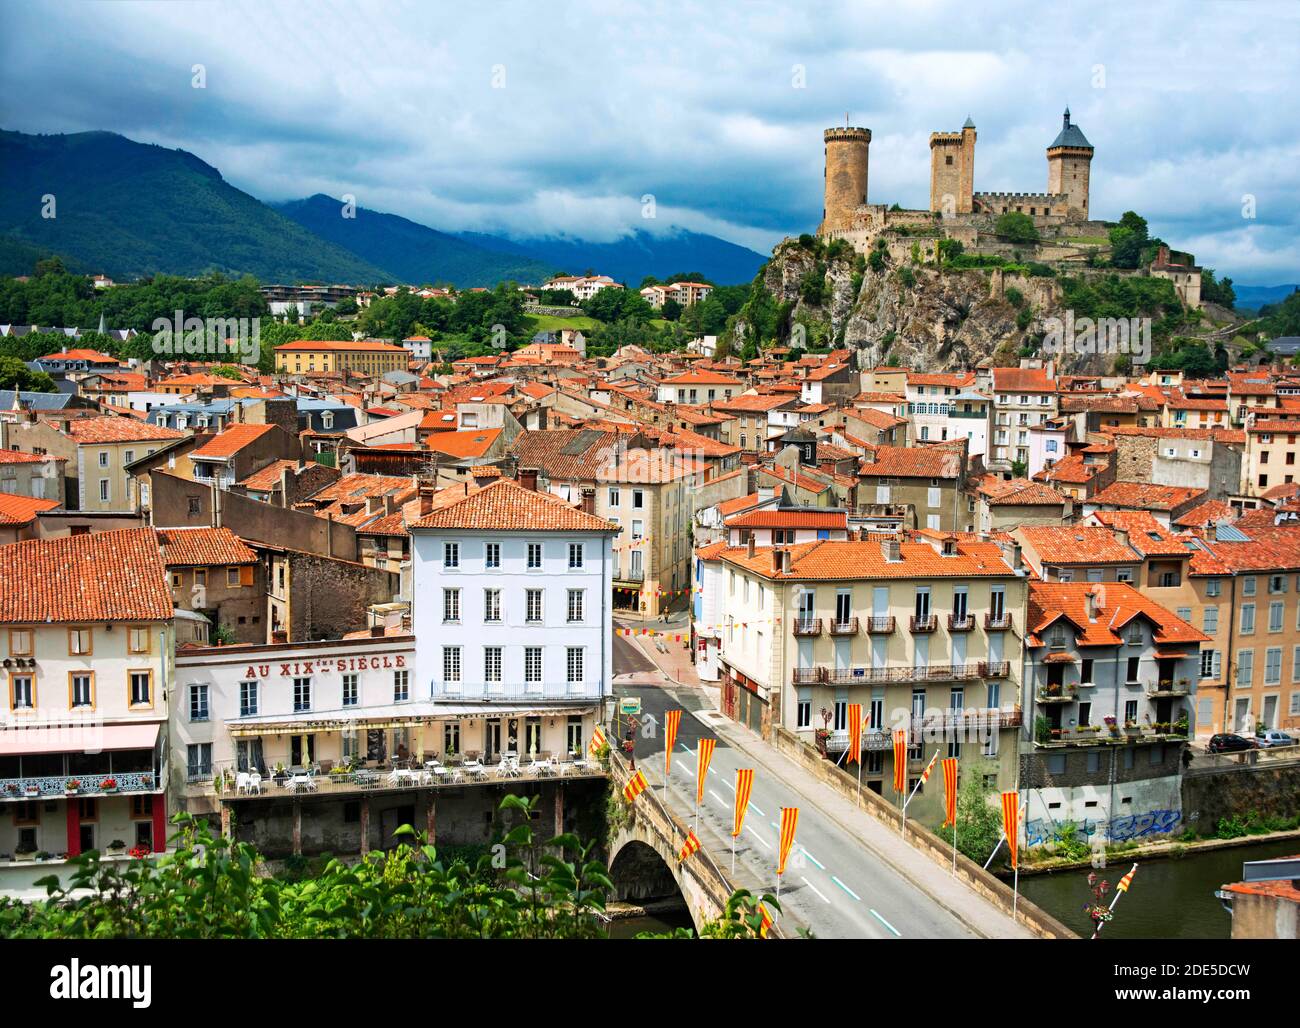 Ariège fiume e castello nel villaggio di Foix, Midi-Pirenei, Pirenei, dipartimento di Ariege, Francia, Europa. Case con tetti in tegole rosse. Foto Stock